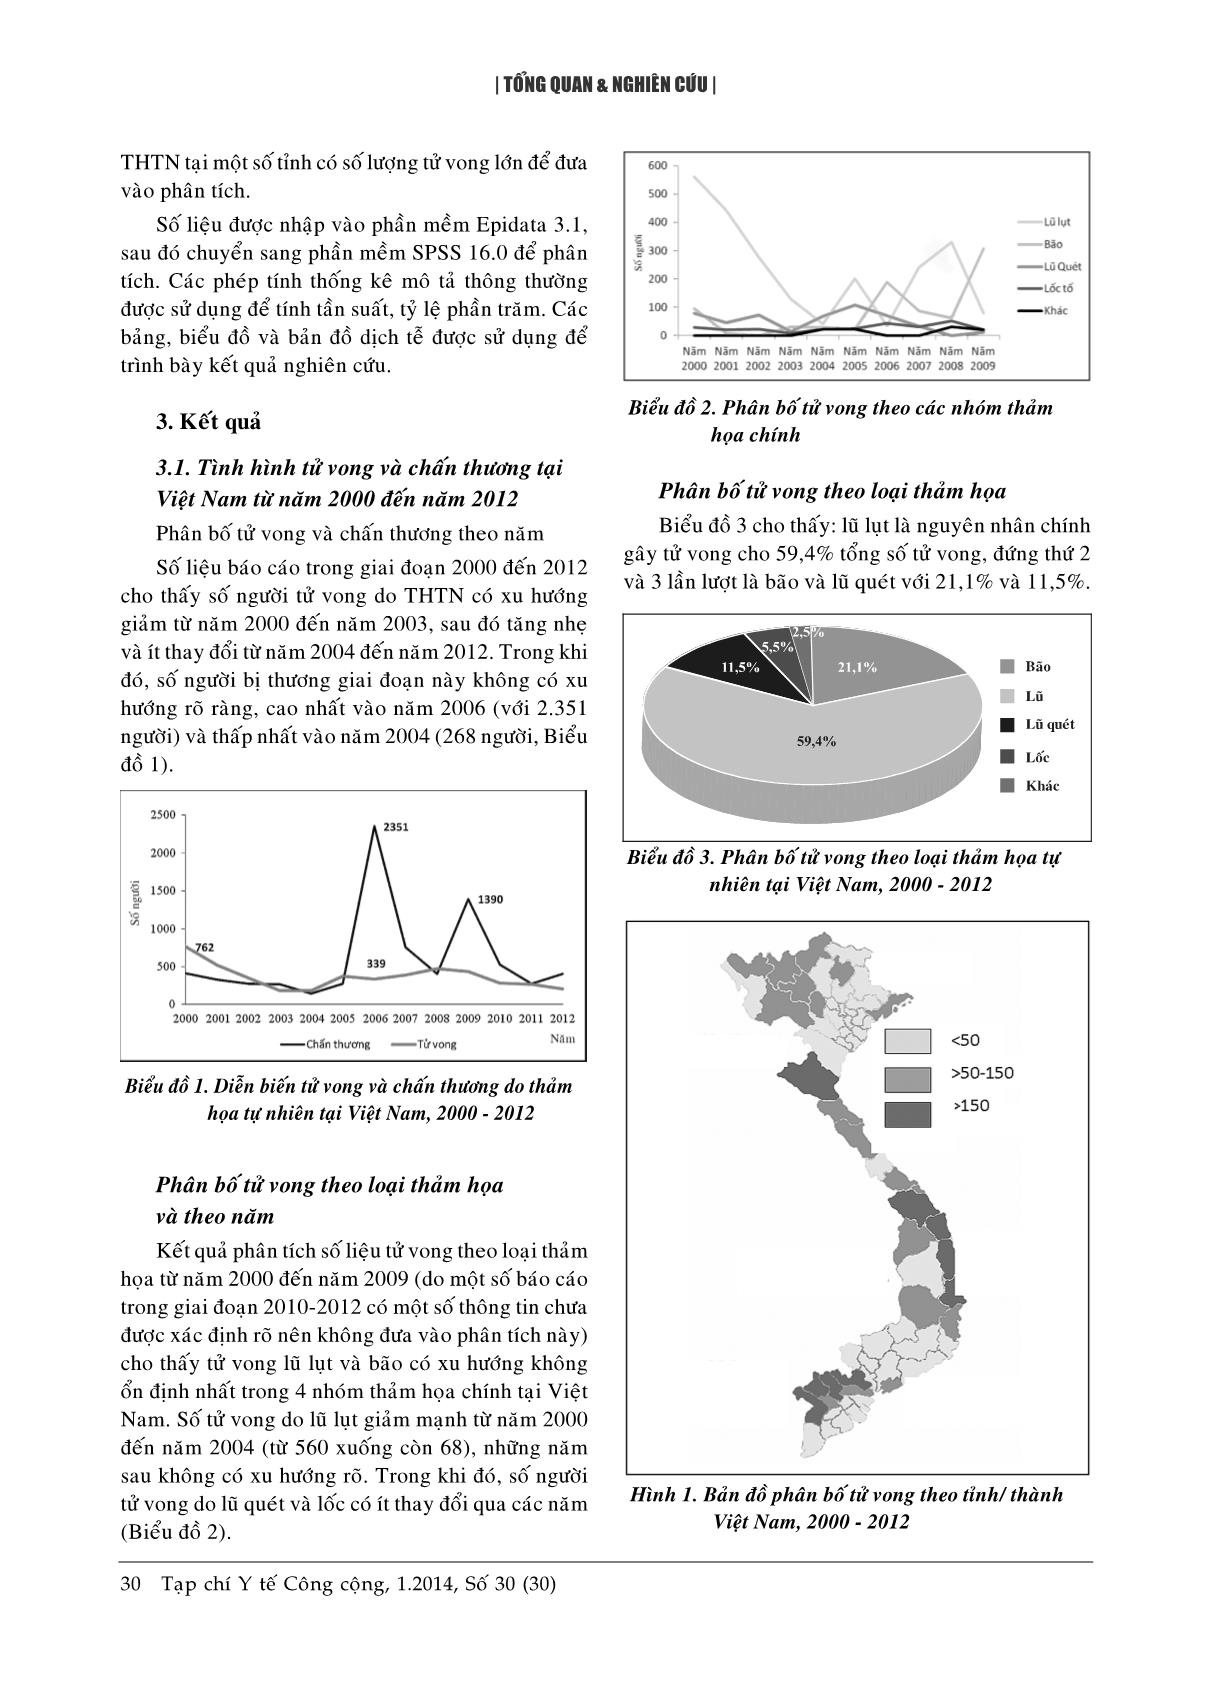 Đặc điểm tử vong và chấn thương do thảm họa tự nhiên tại Việt Nam từ năm 2000 đến năm 2012 trang 3